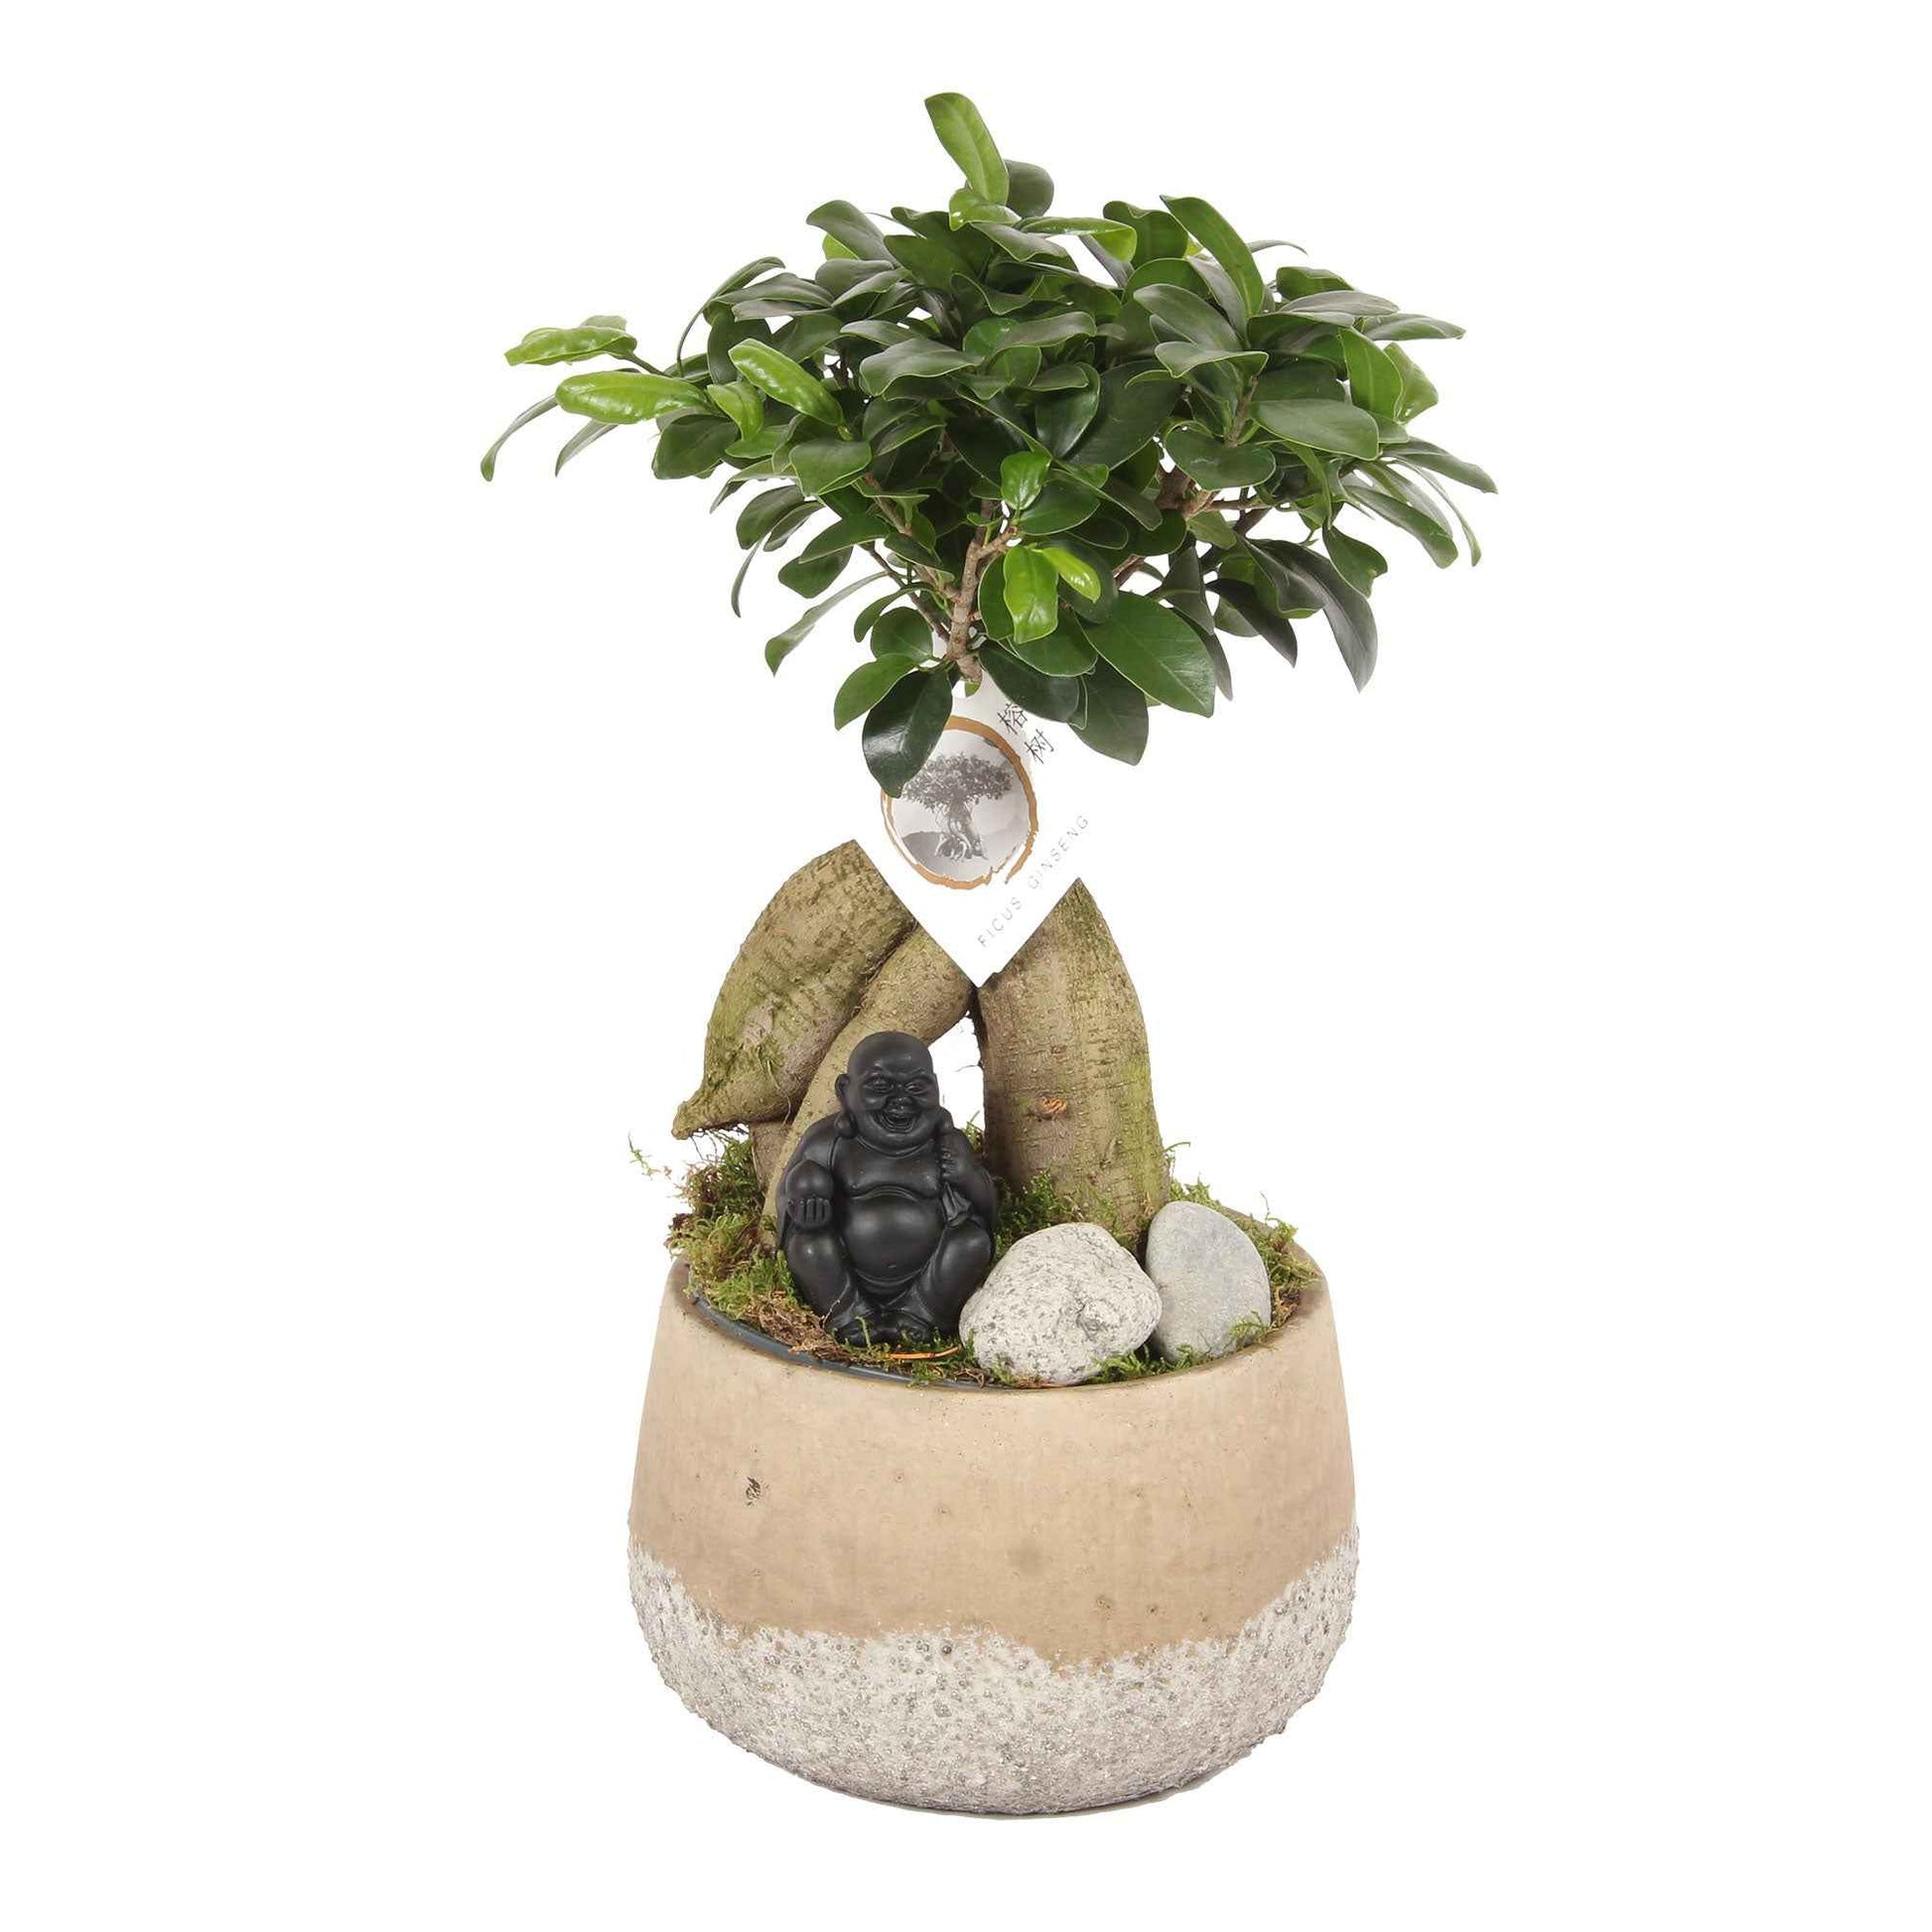 Bonsaï Ficus 'Gingseng' avec cache-pot en béton - Plantes d'intérieur : les tendances actuelles